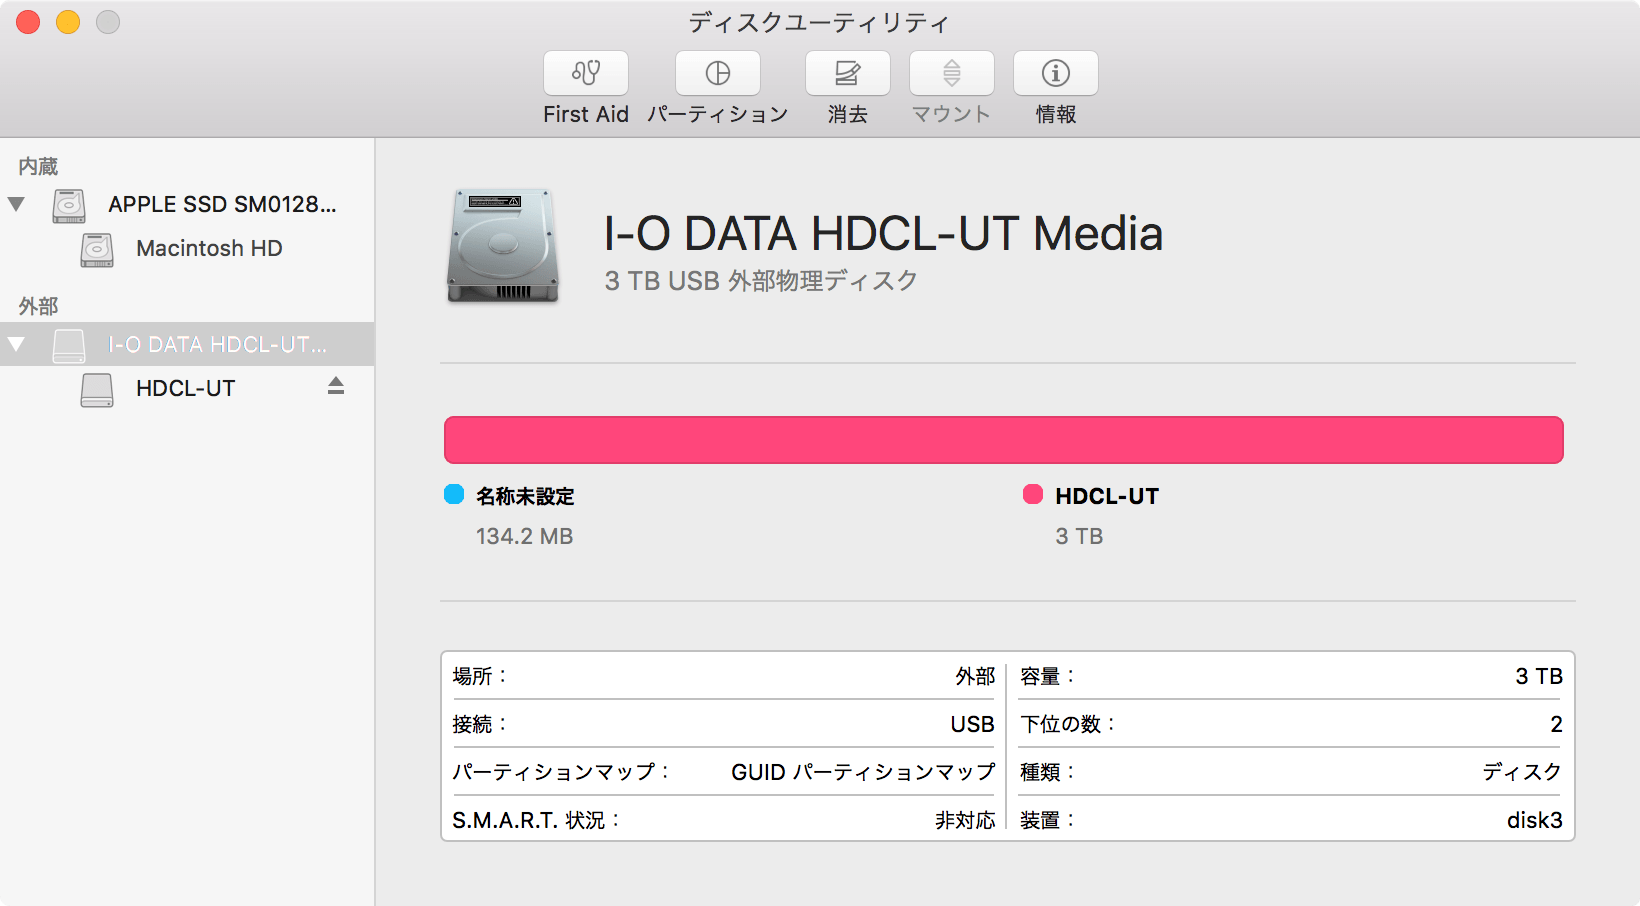 018_20160326_i-o-data-HDC-LA3.0